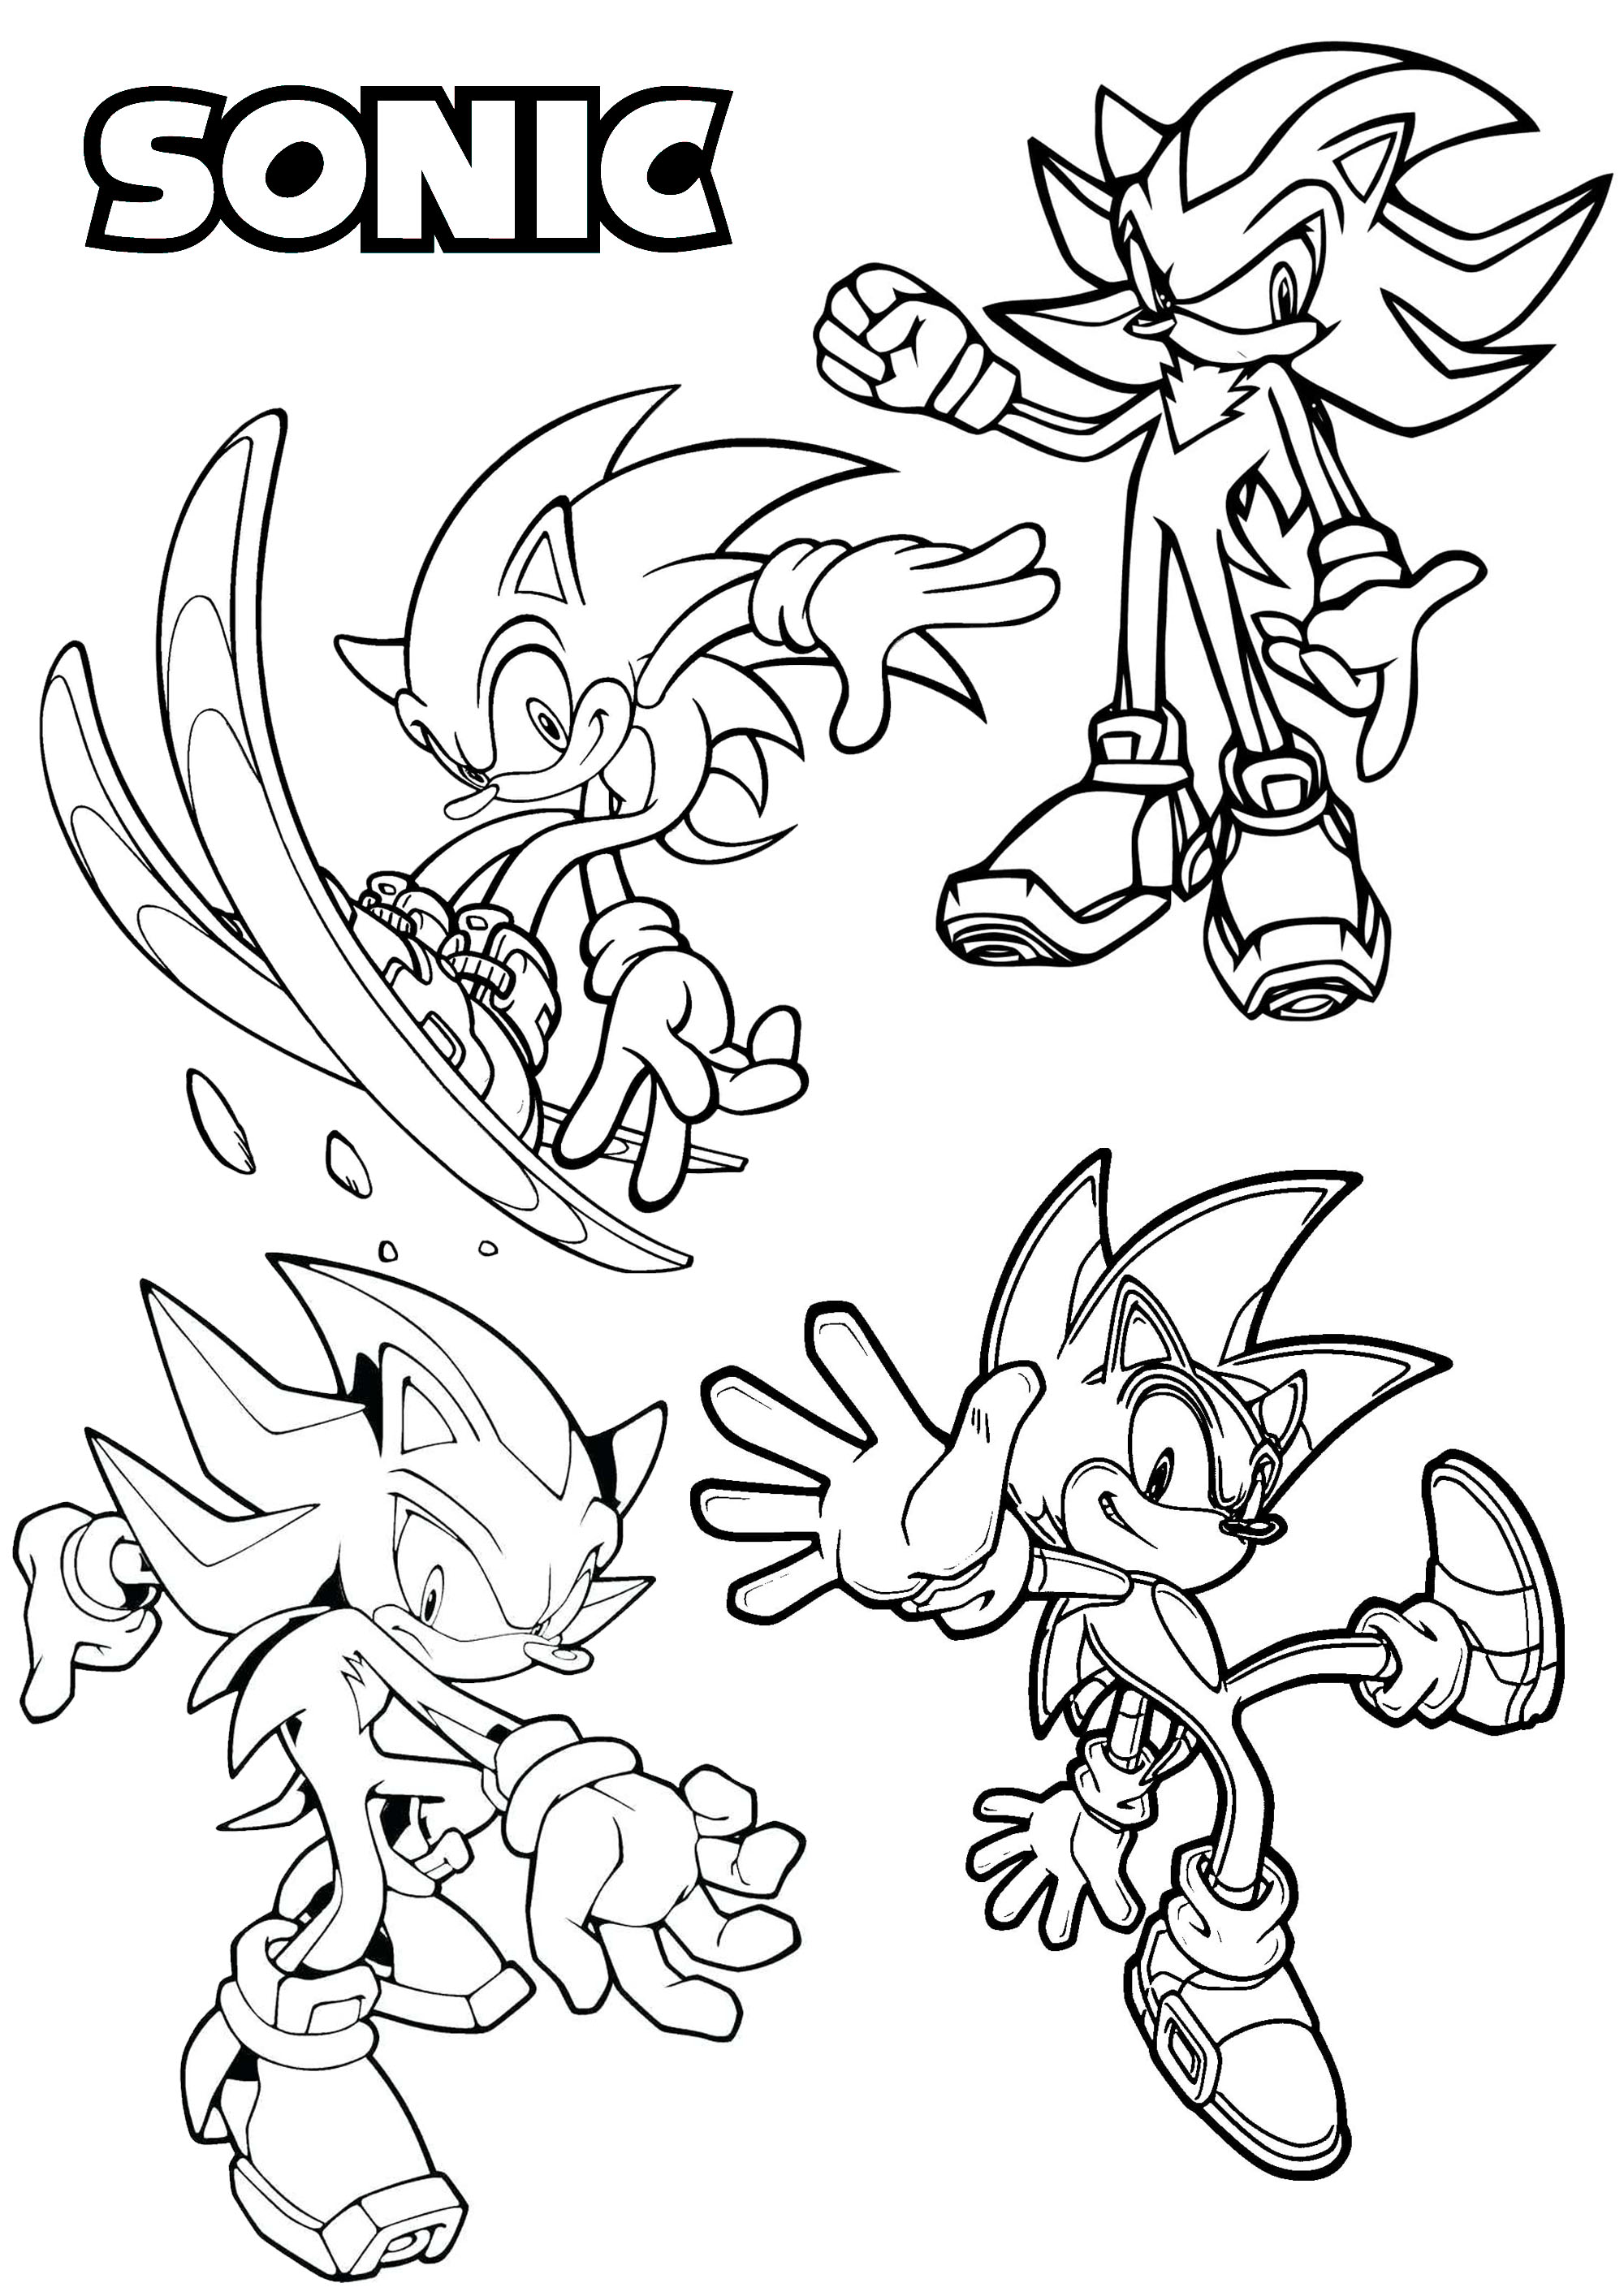 Quatro versões diferentes de uma das personagens mais famosas dos videojogos, criada nos anos 90: Sonic the Hedgehog